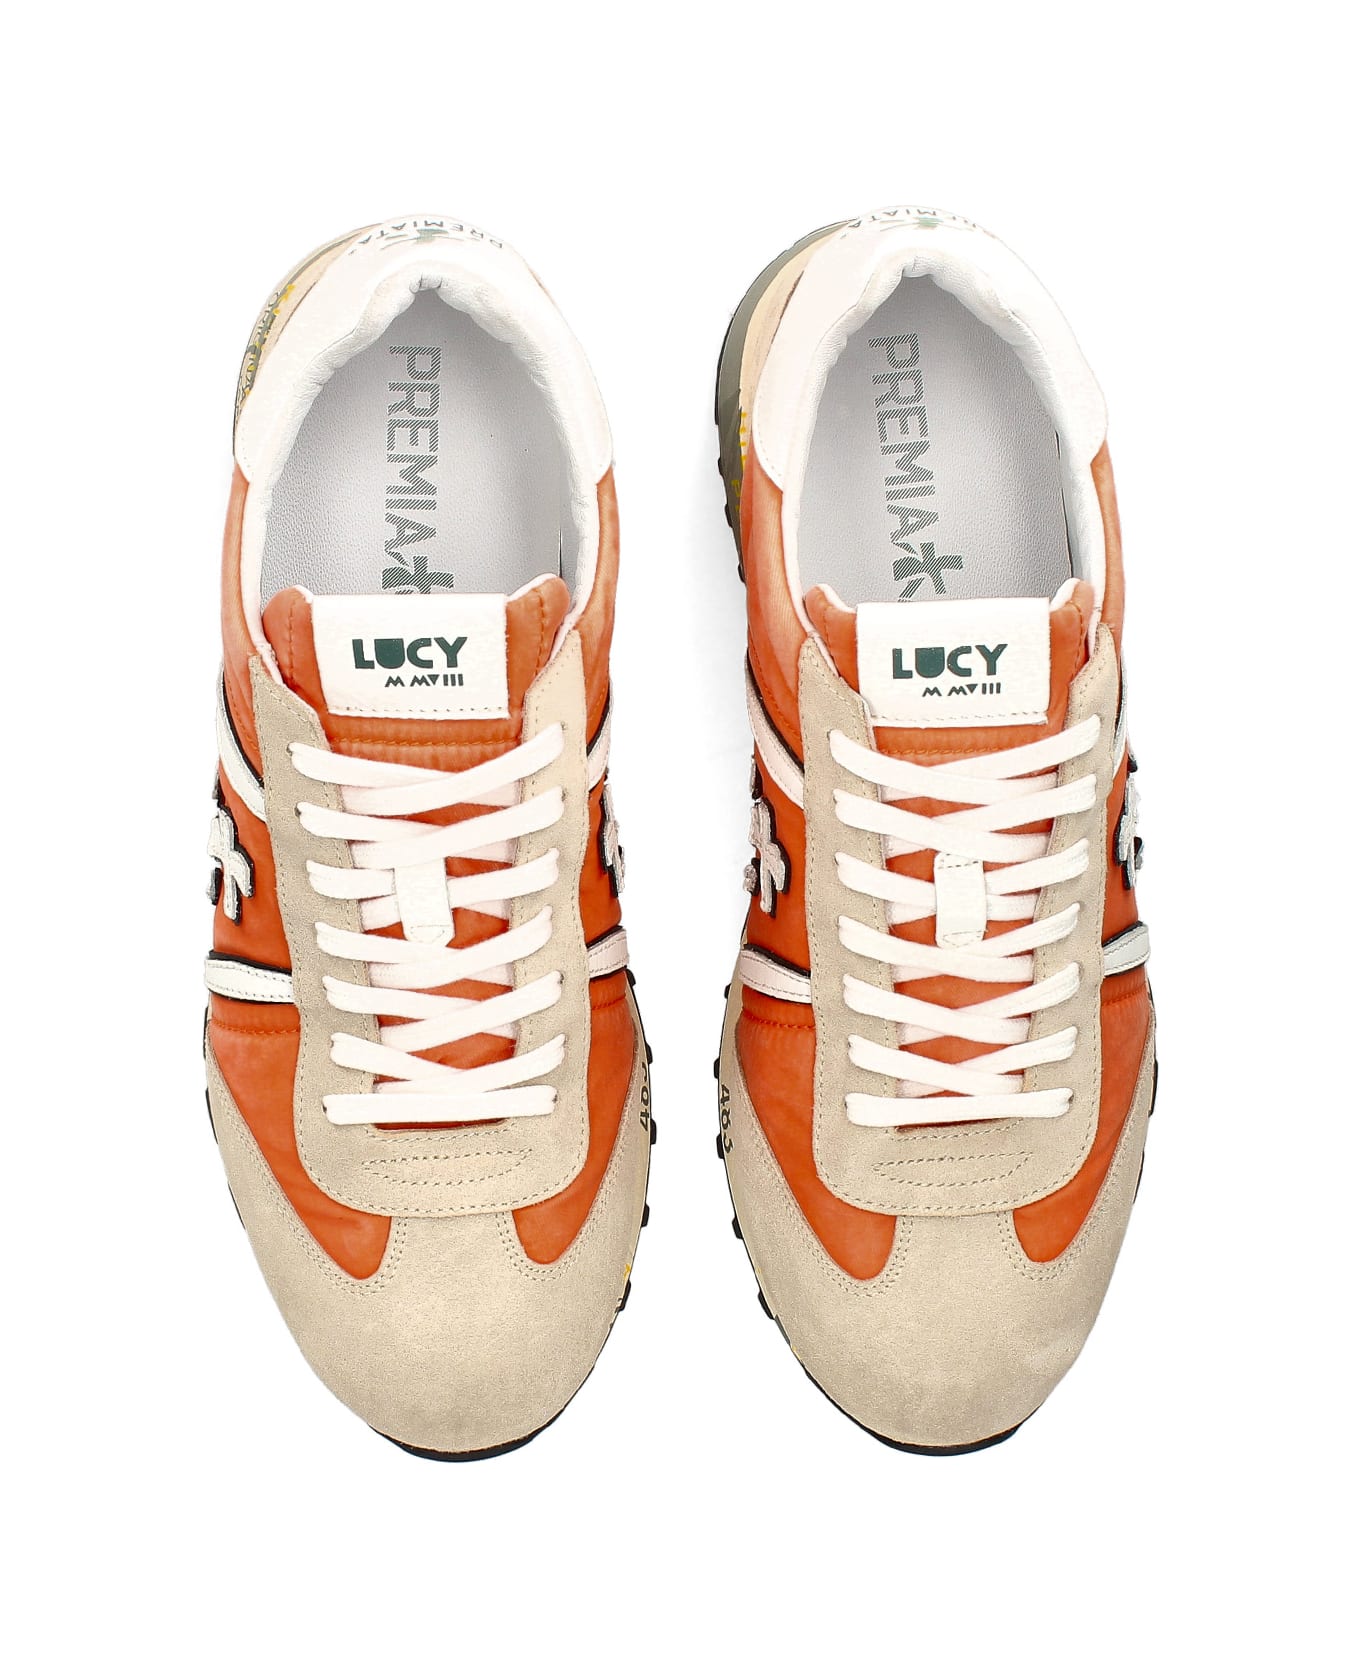 Premiata Lucy 6601 Orange Sneaker